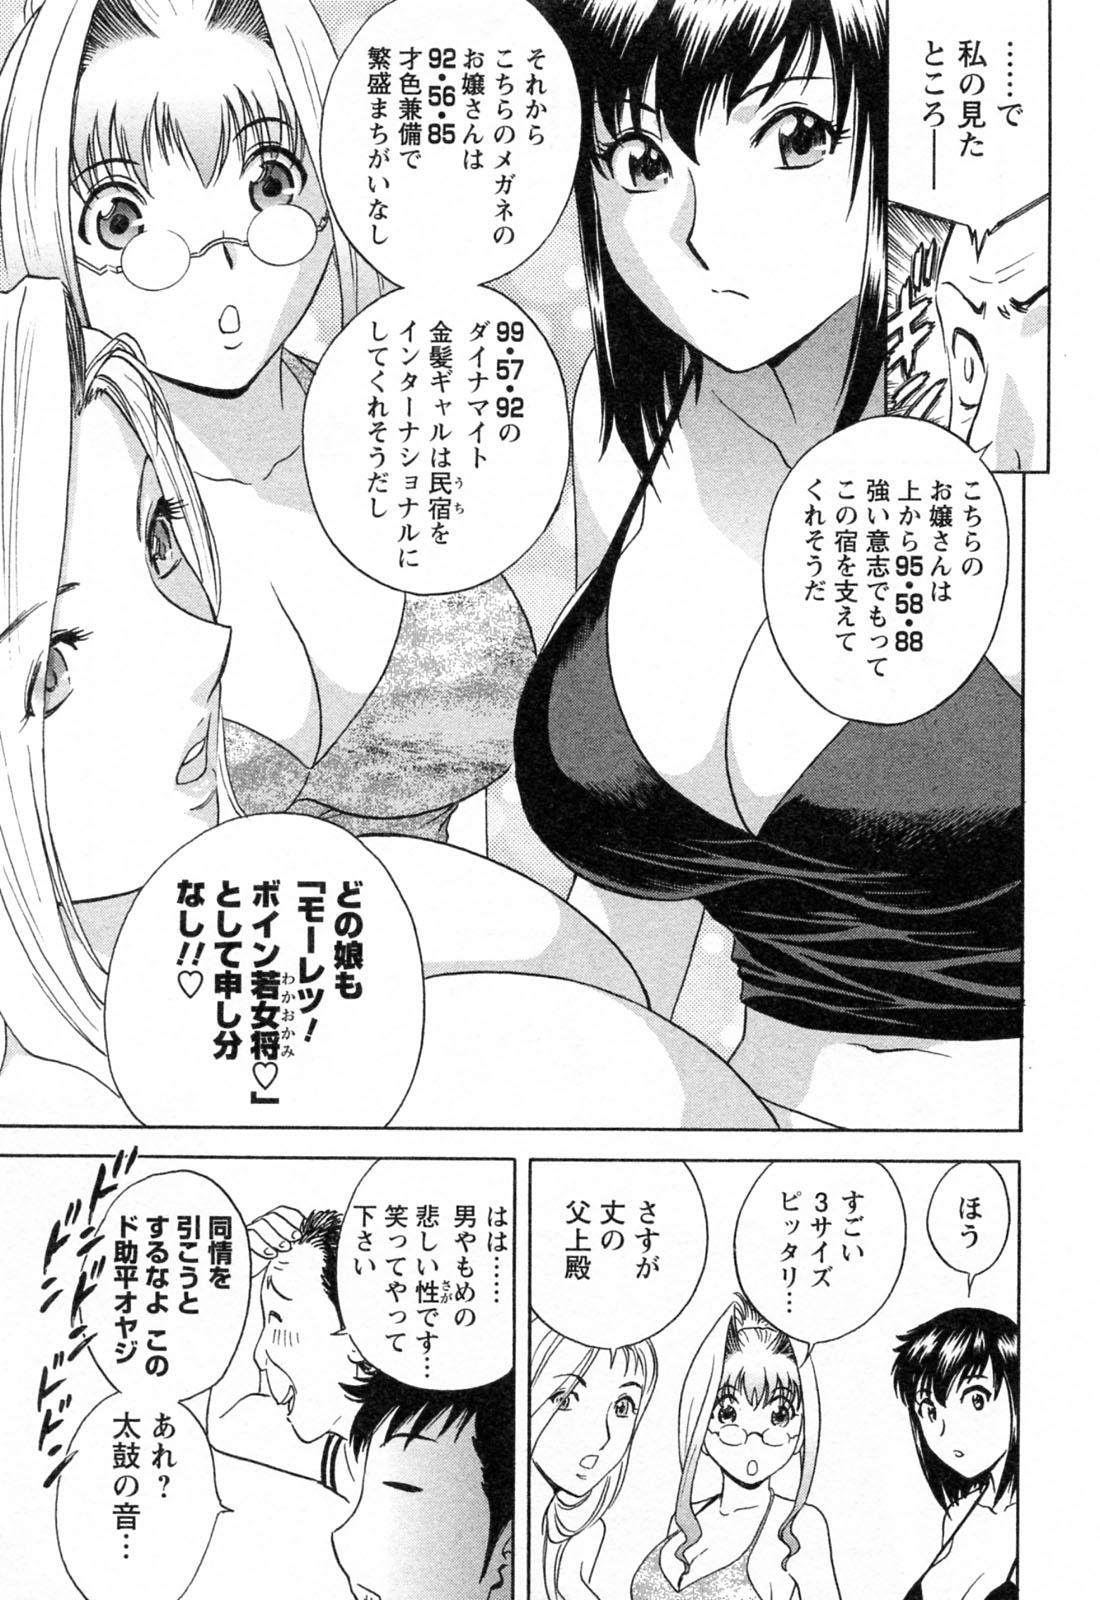 [Hidemaru] Mo-Retsu! Boin Sensei (Boing Boing Teacher) Vol.4 120